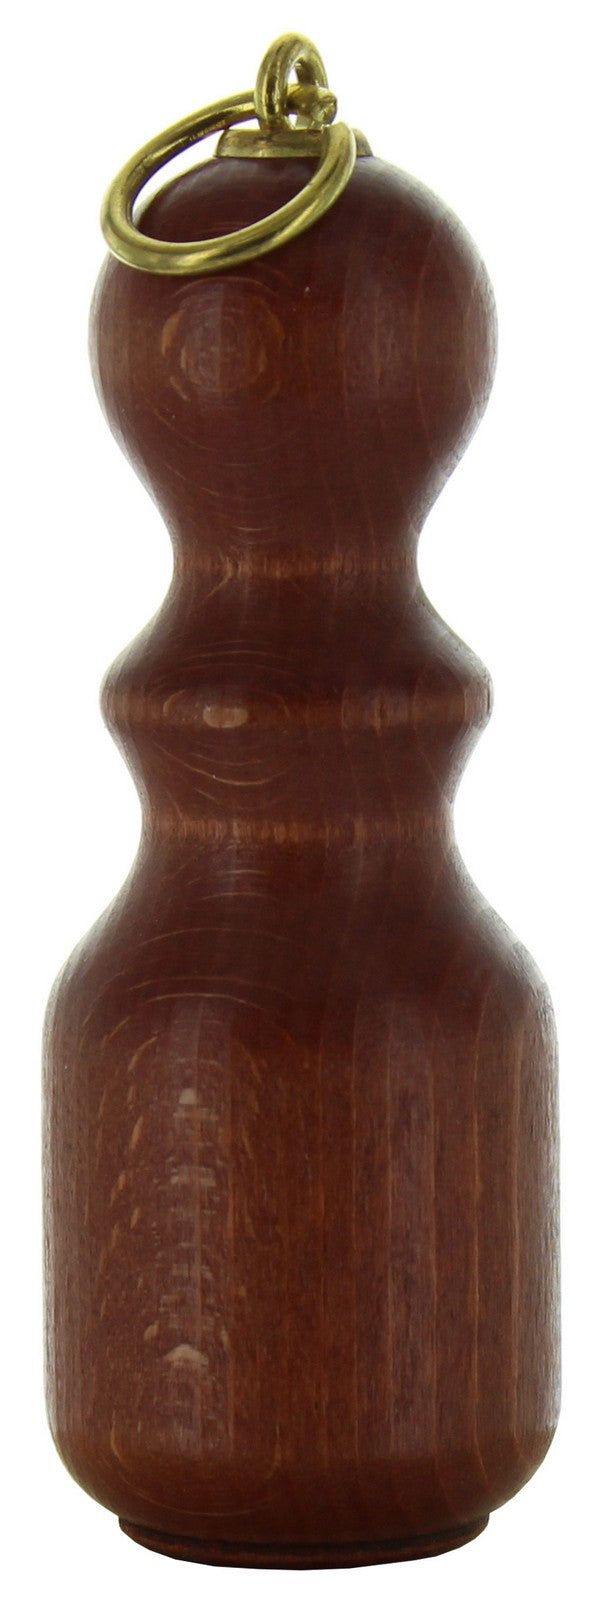 fiocco per tende in legno ciliegio cod:ferx.6961